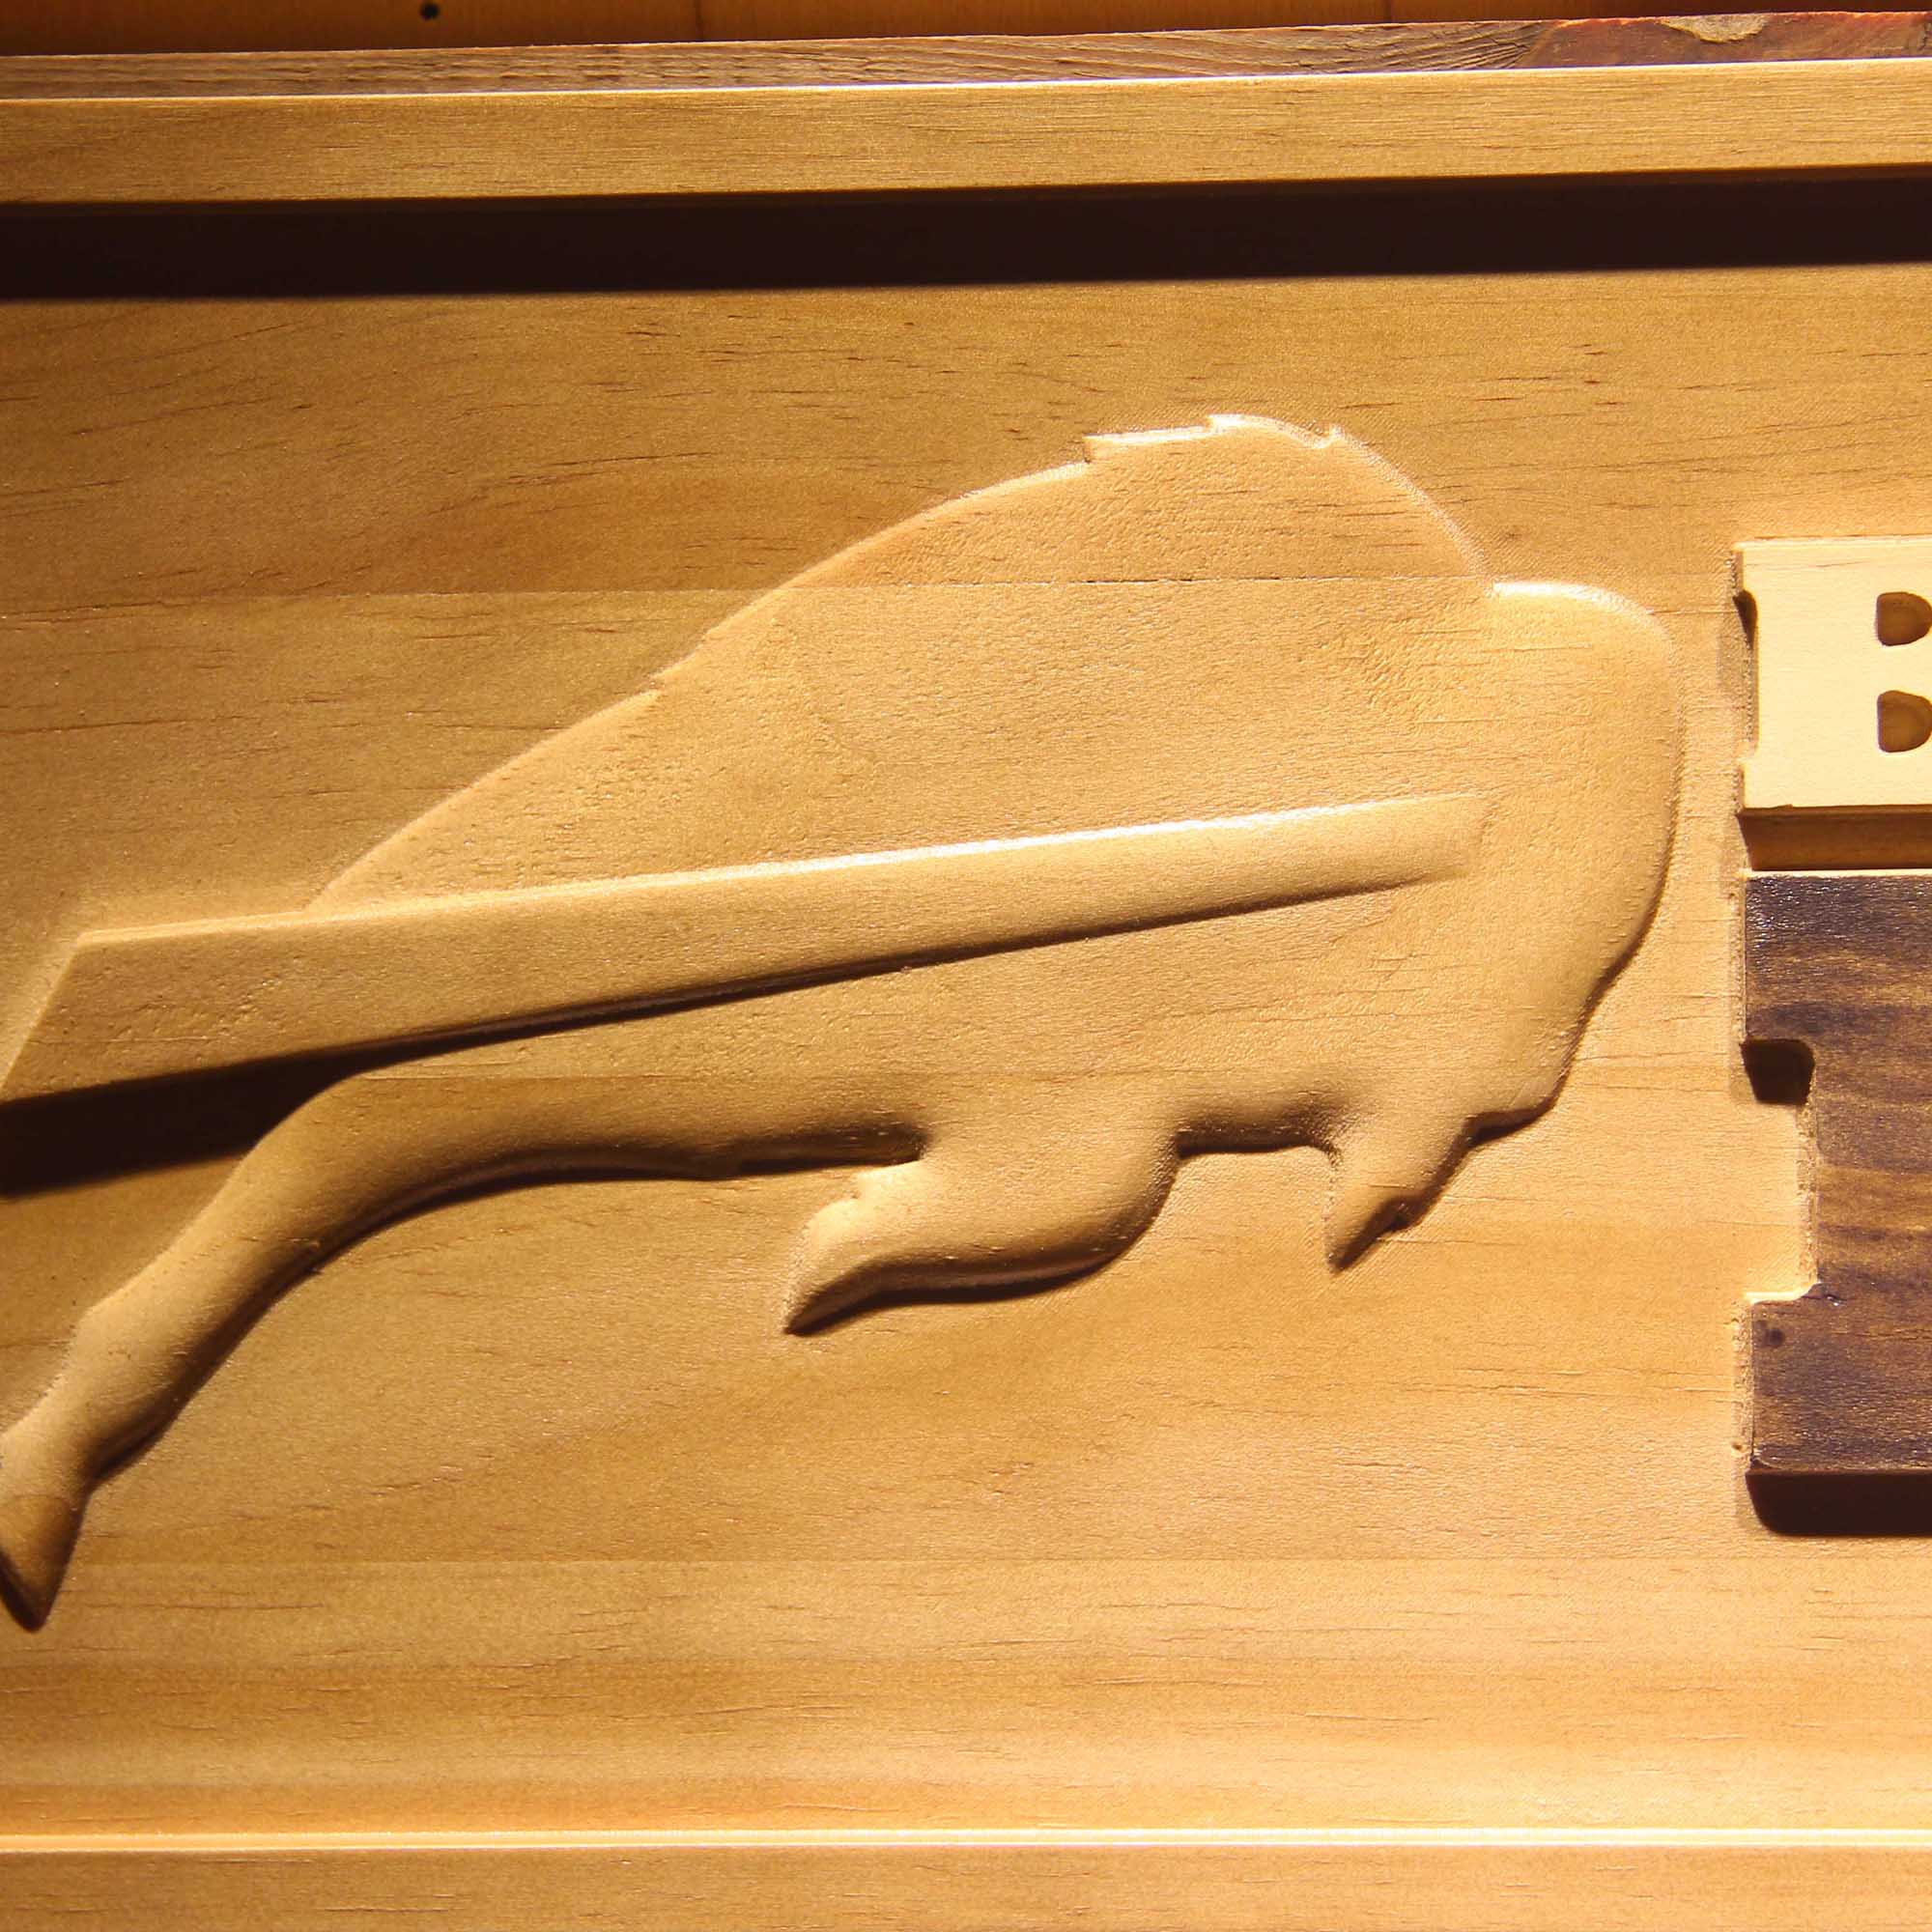 Buffalo Bills Football Man Cave Sport 3D Wooden Engrave Sign